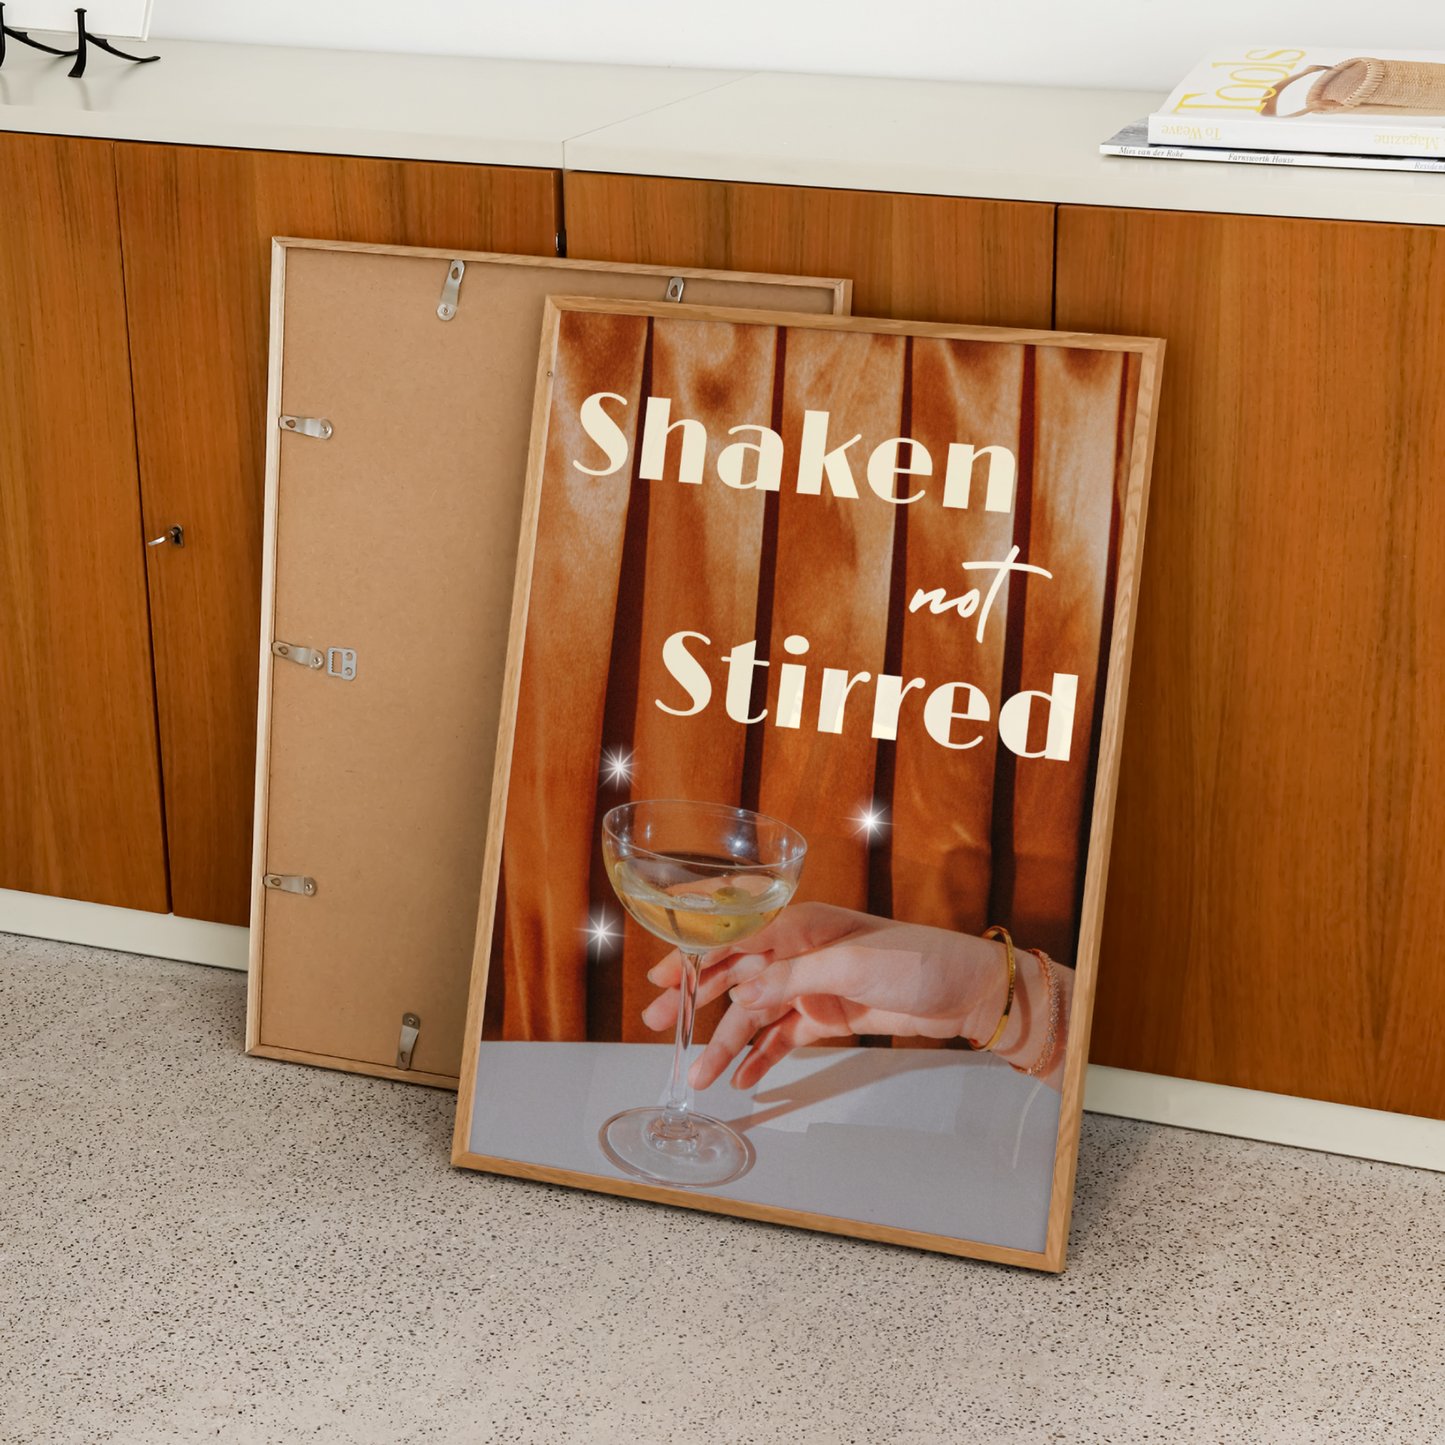 Shaken Not Stirred Print